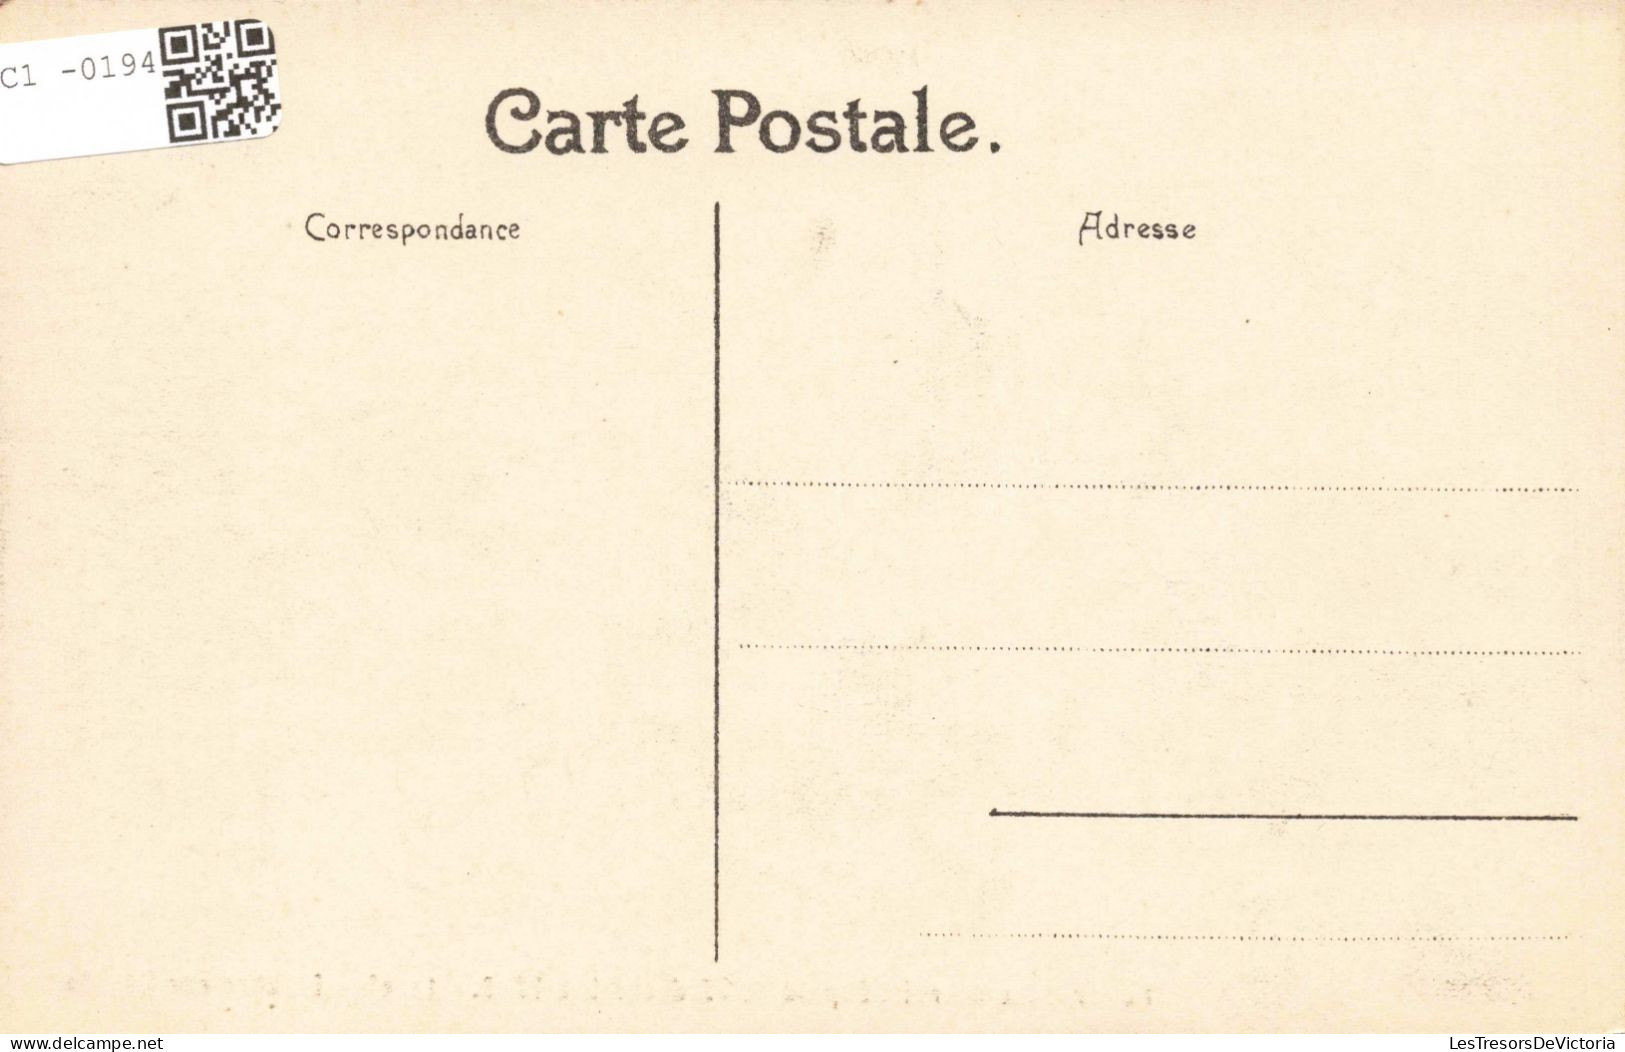 FAMILLES ROYALES - Funérailles Du Roi Léopold II, 22 Décembre 1909 - Le Char Funèbre Rue Royale - Carte Postale Ancienne - Familles Royales